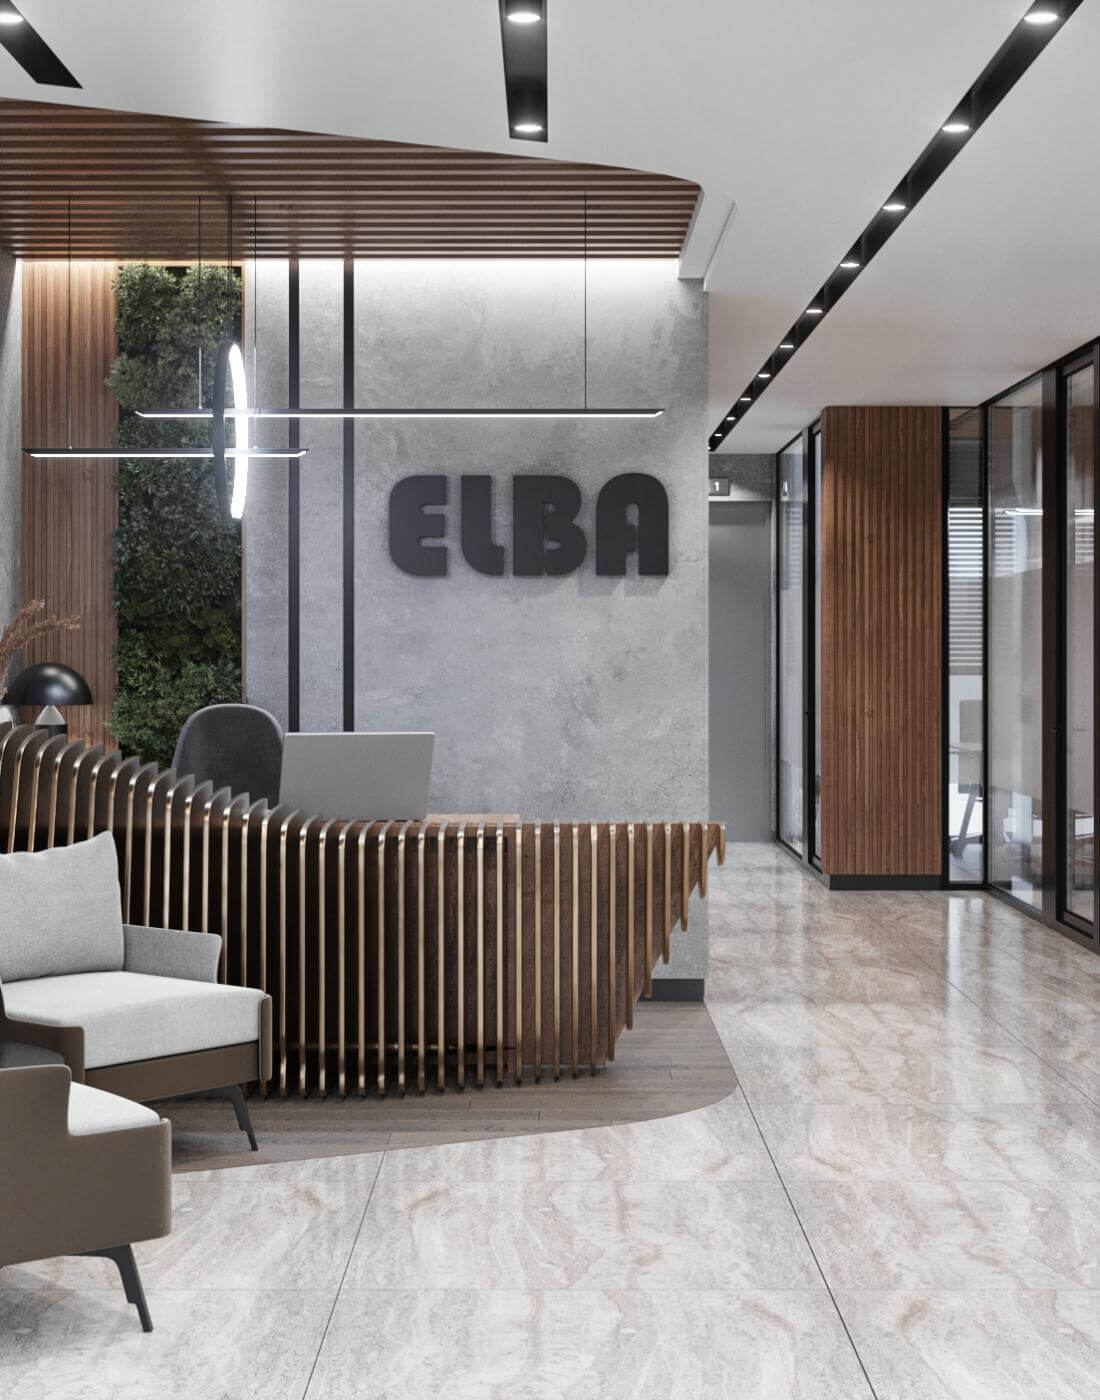   Elba  - Berg Office Turkey Offices